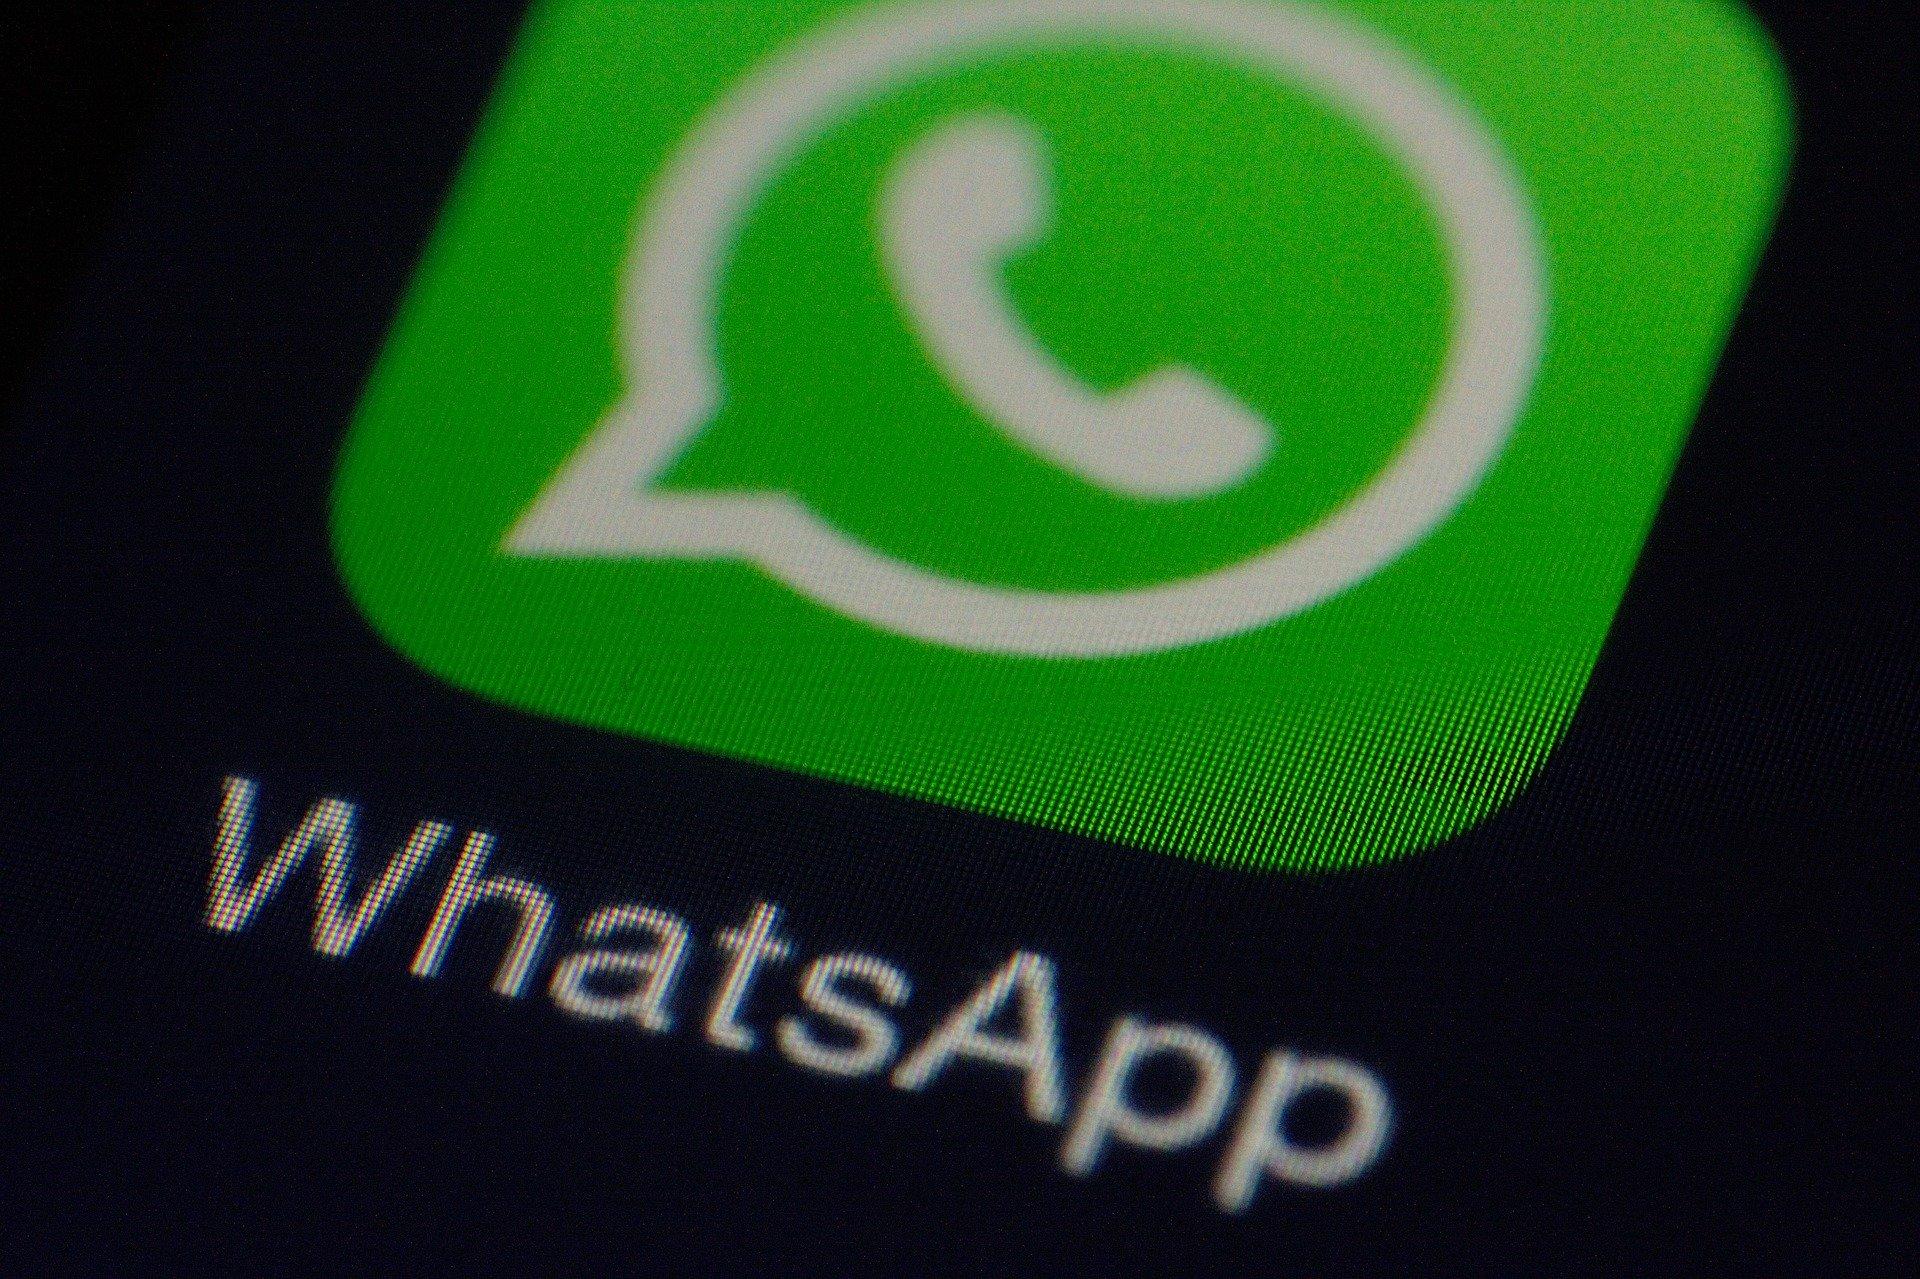 WhatsApp версии 2.20.194.12 с расширенными возможностями уже можно скачать